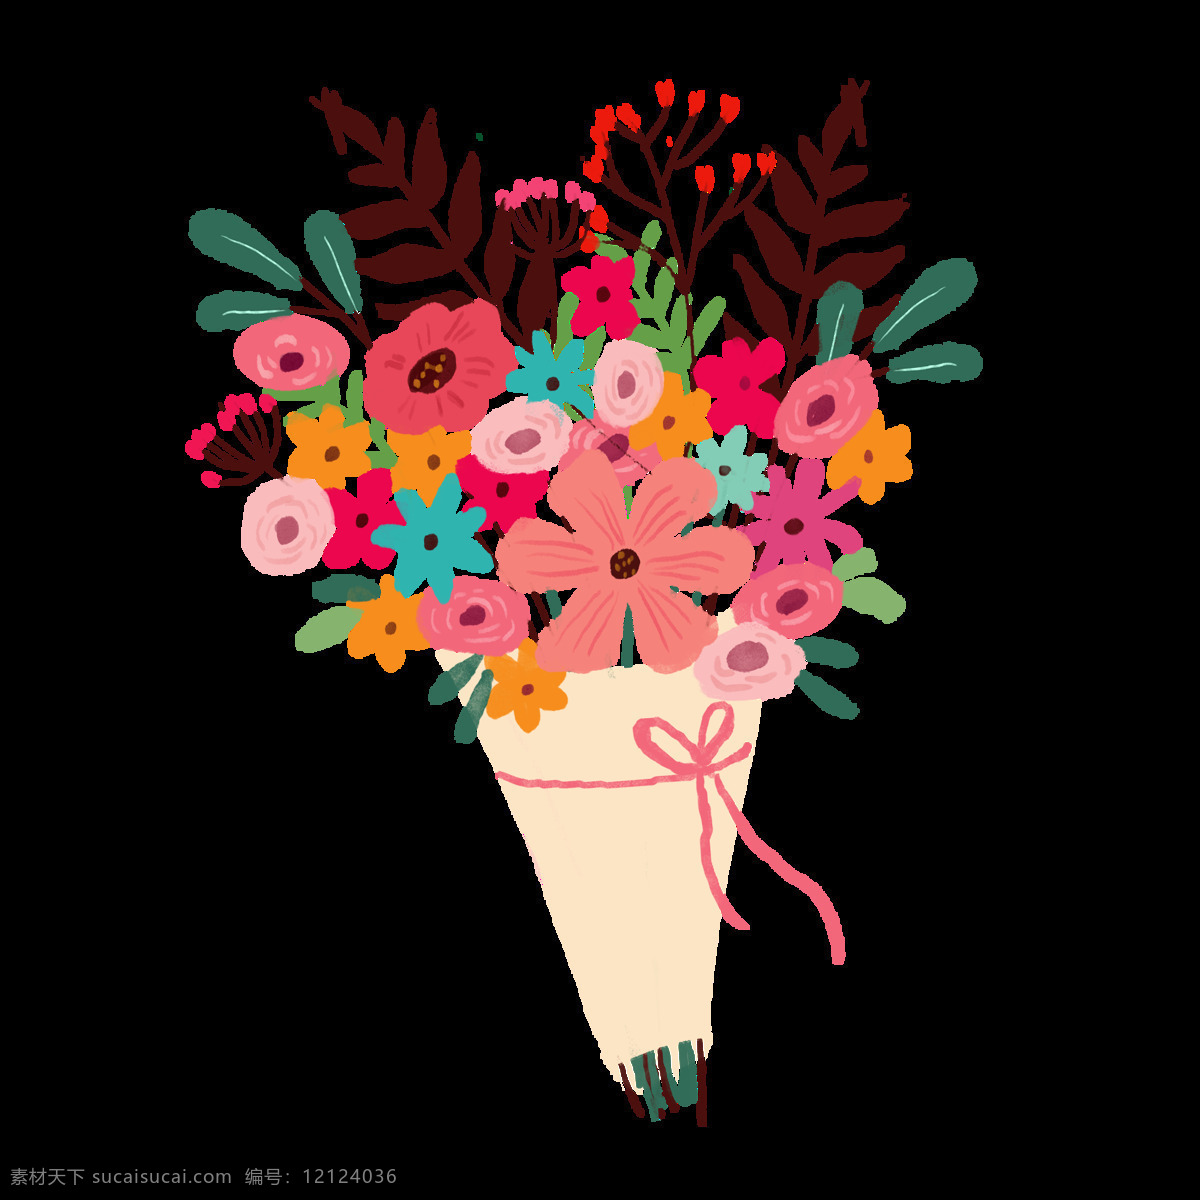 花朵 花束 插画 卡通 背景 海报 素材图片 png格式